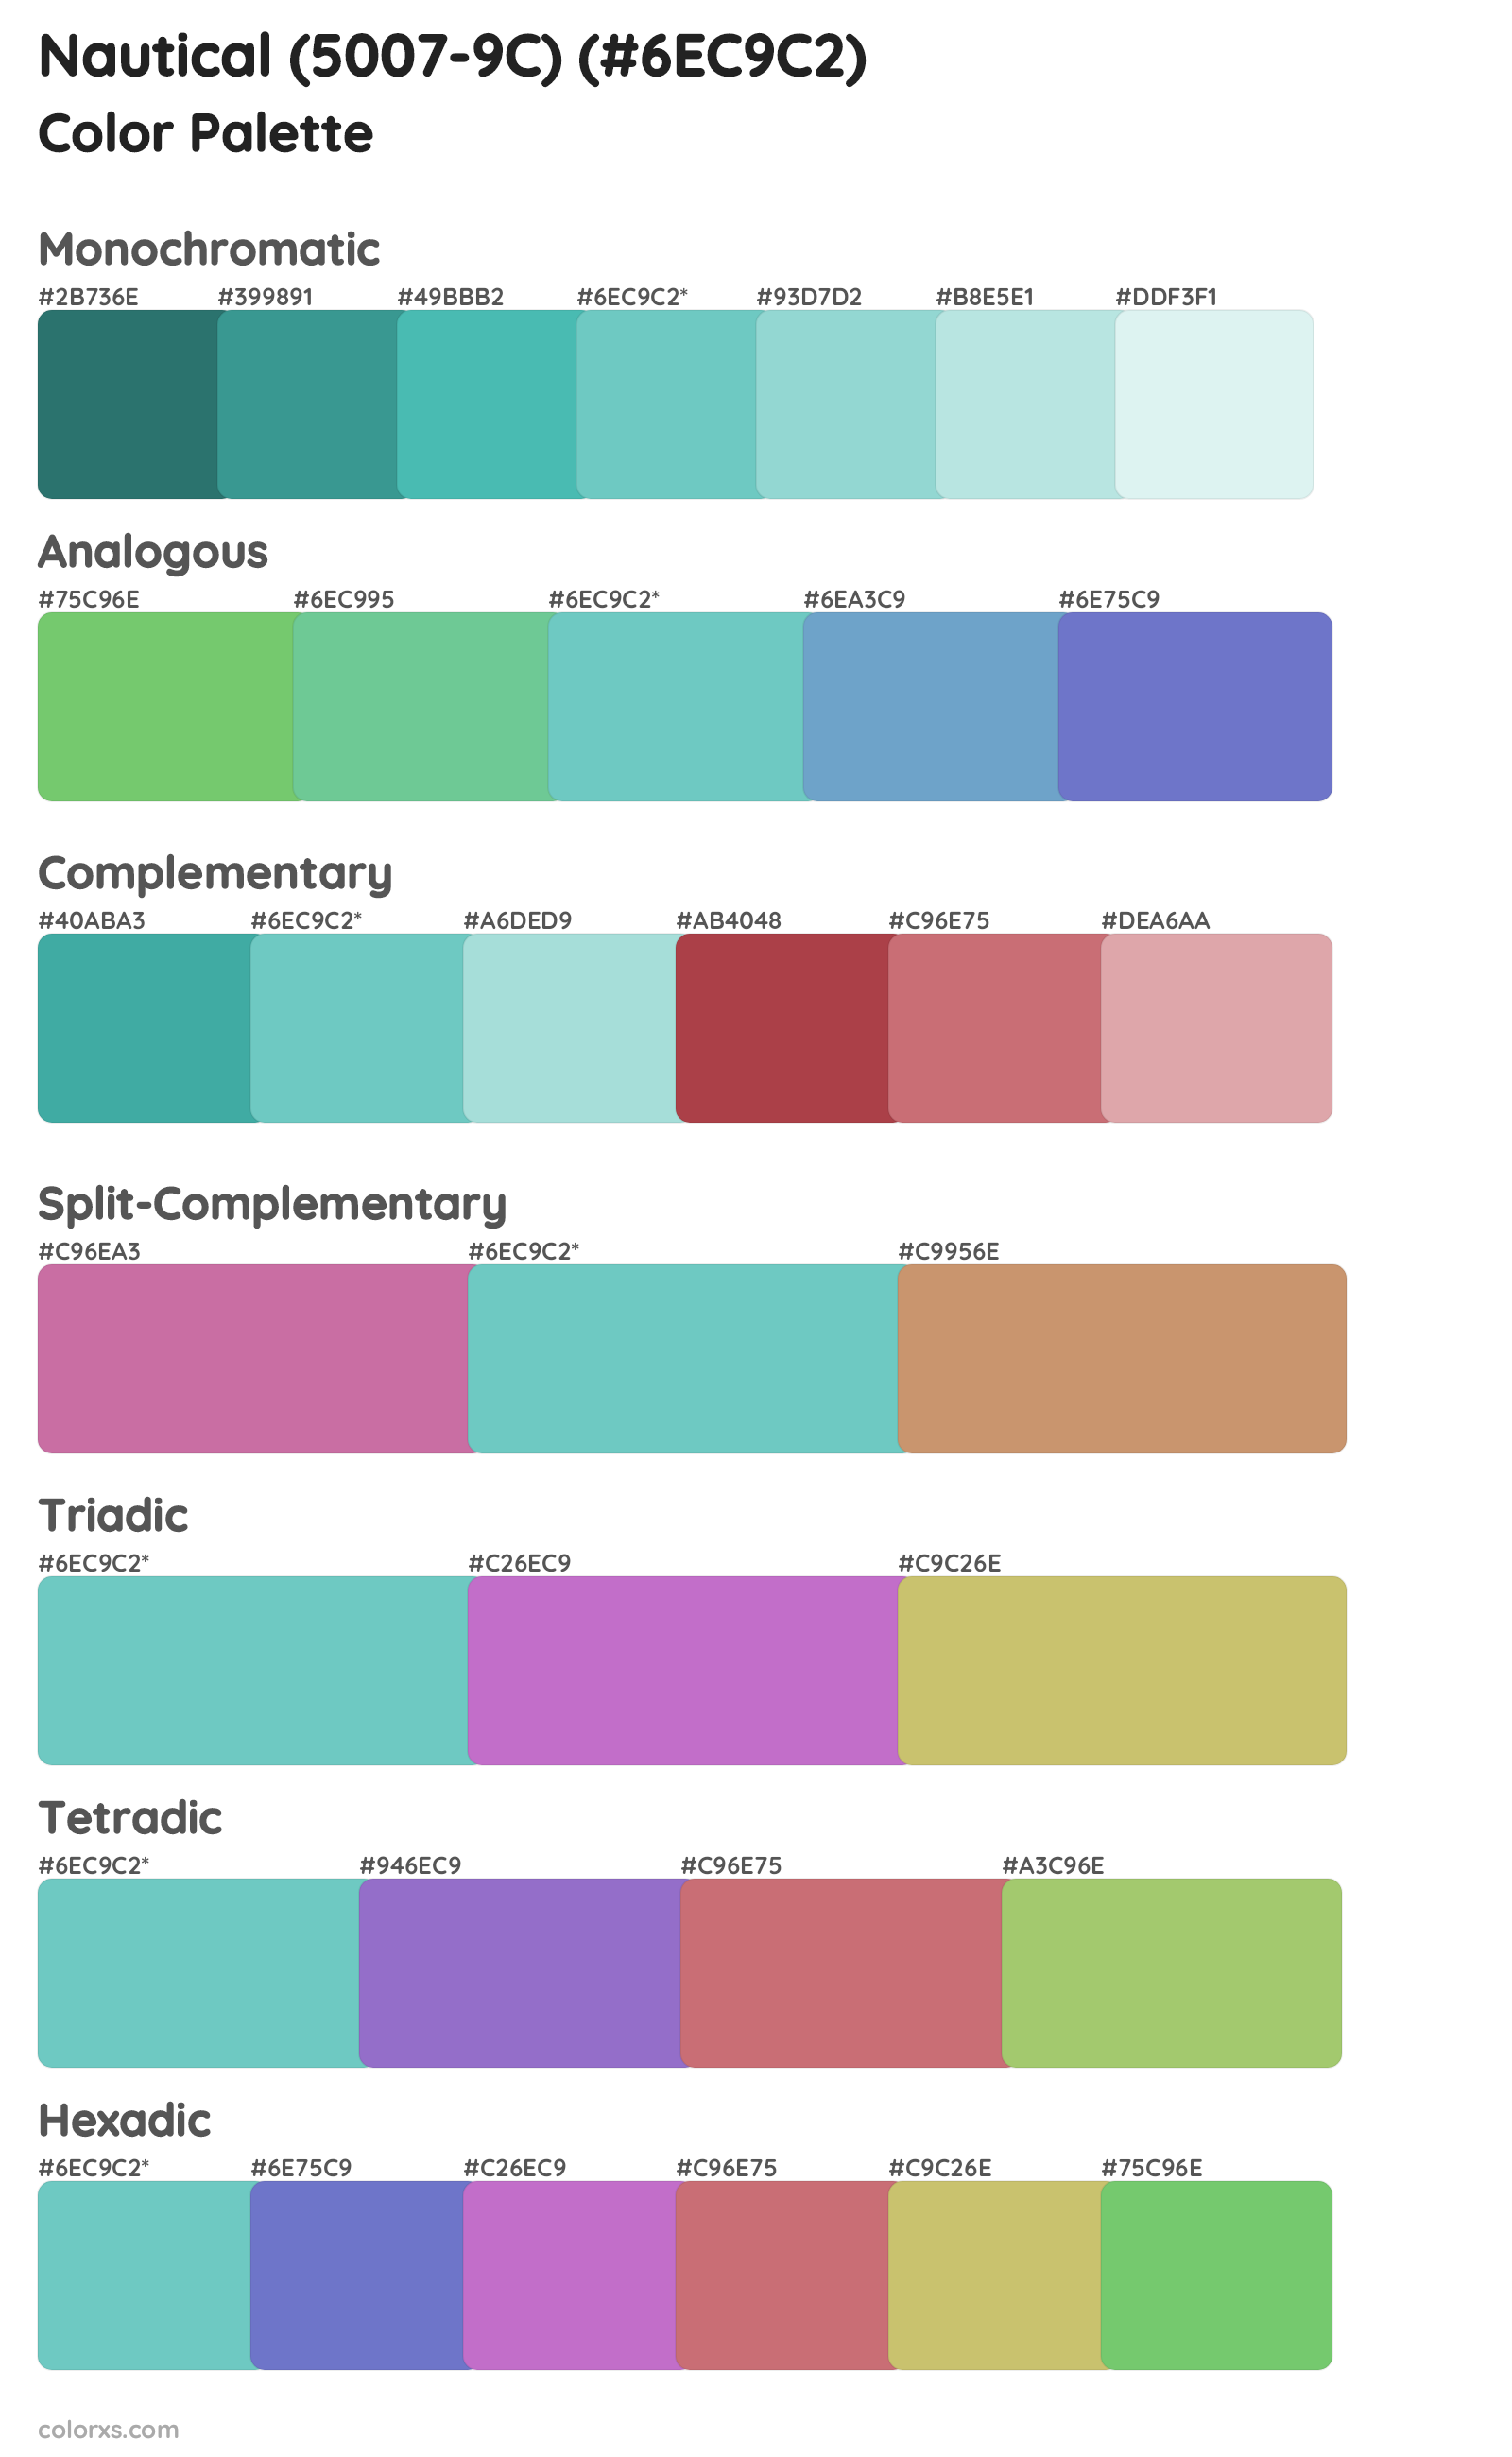 Nautical (5007-9C) Color Scheme Palettes